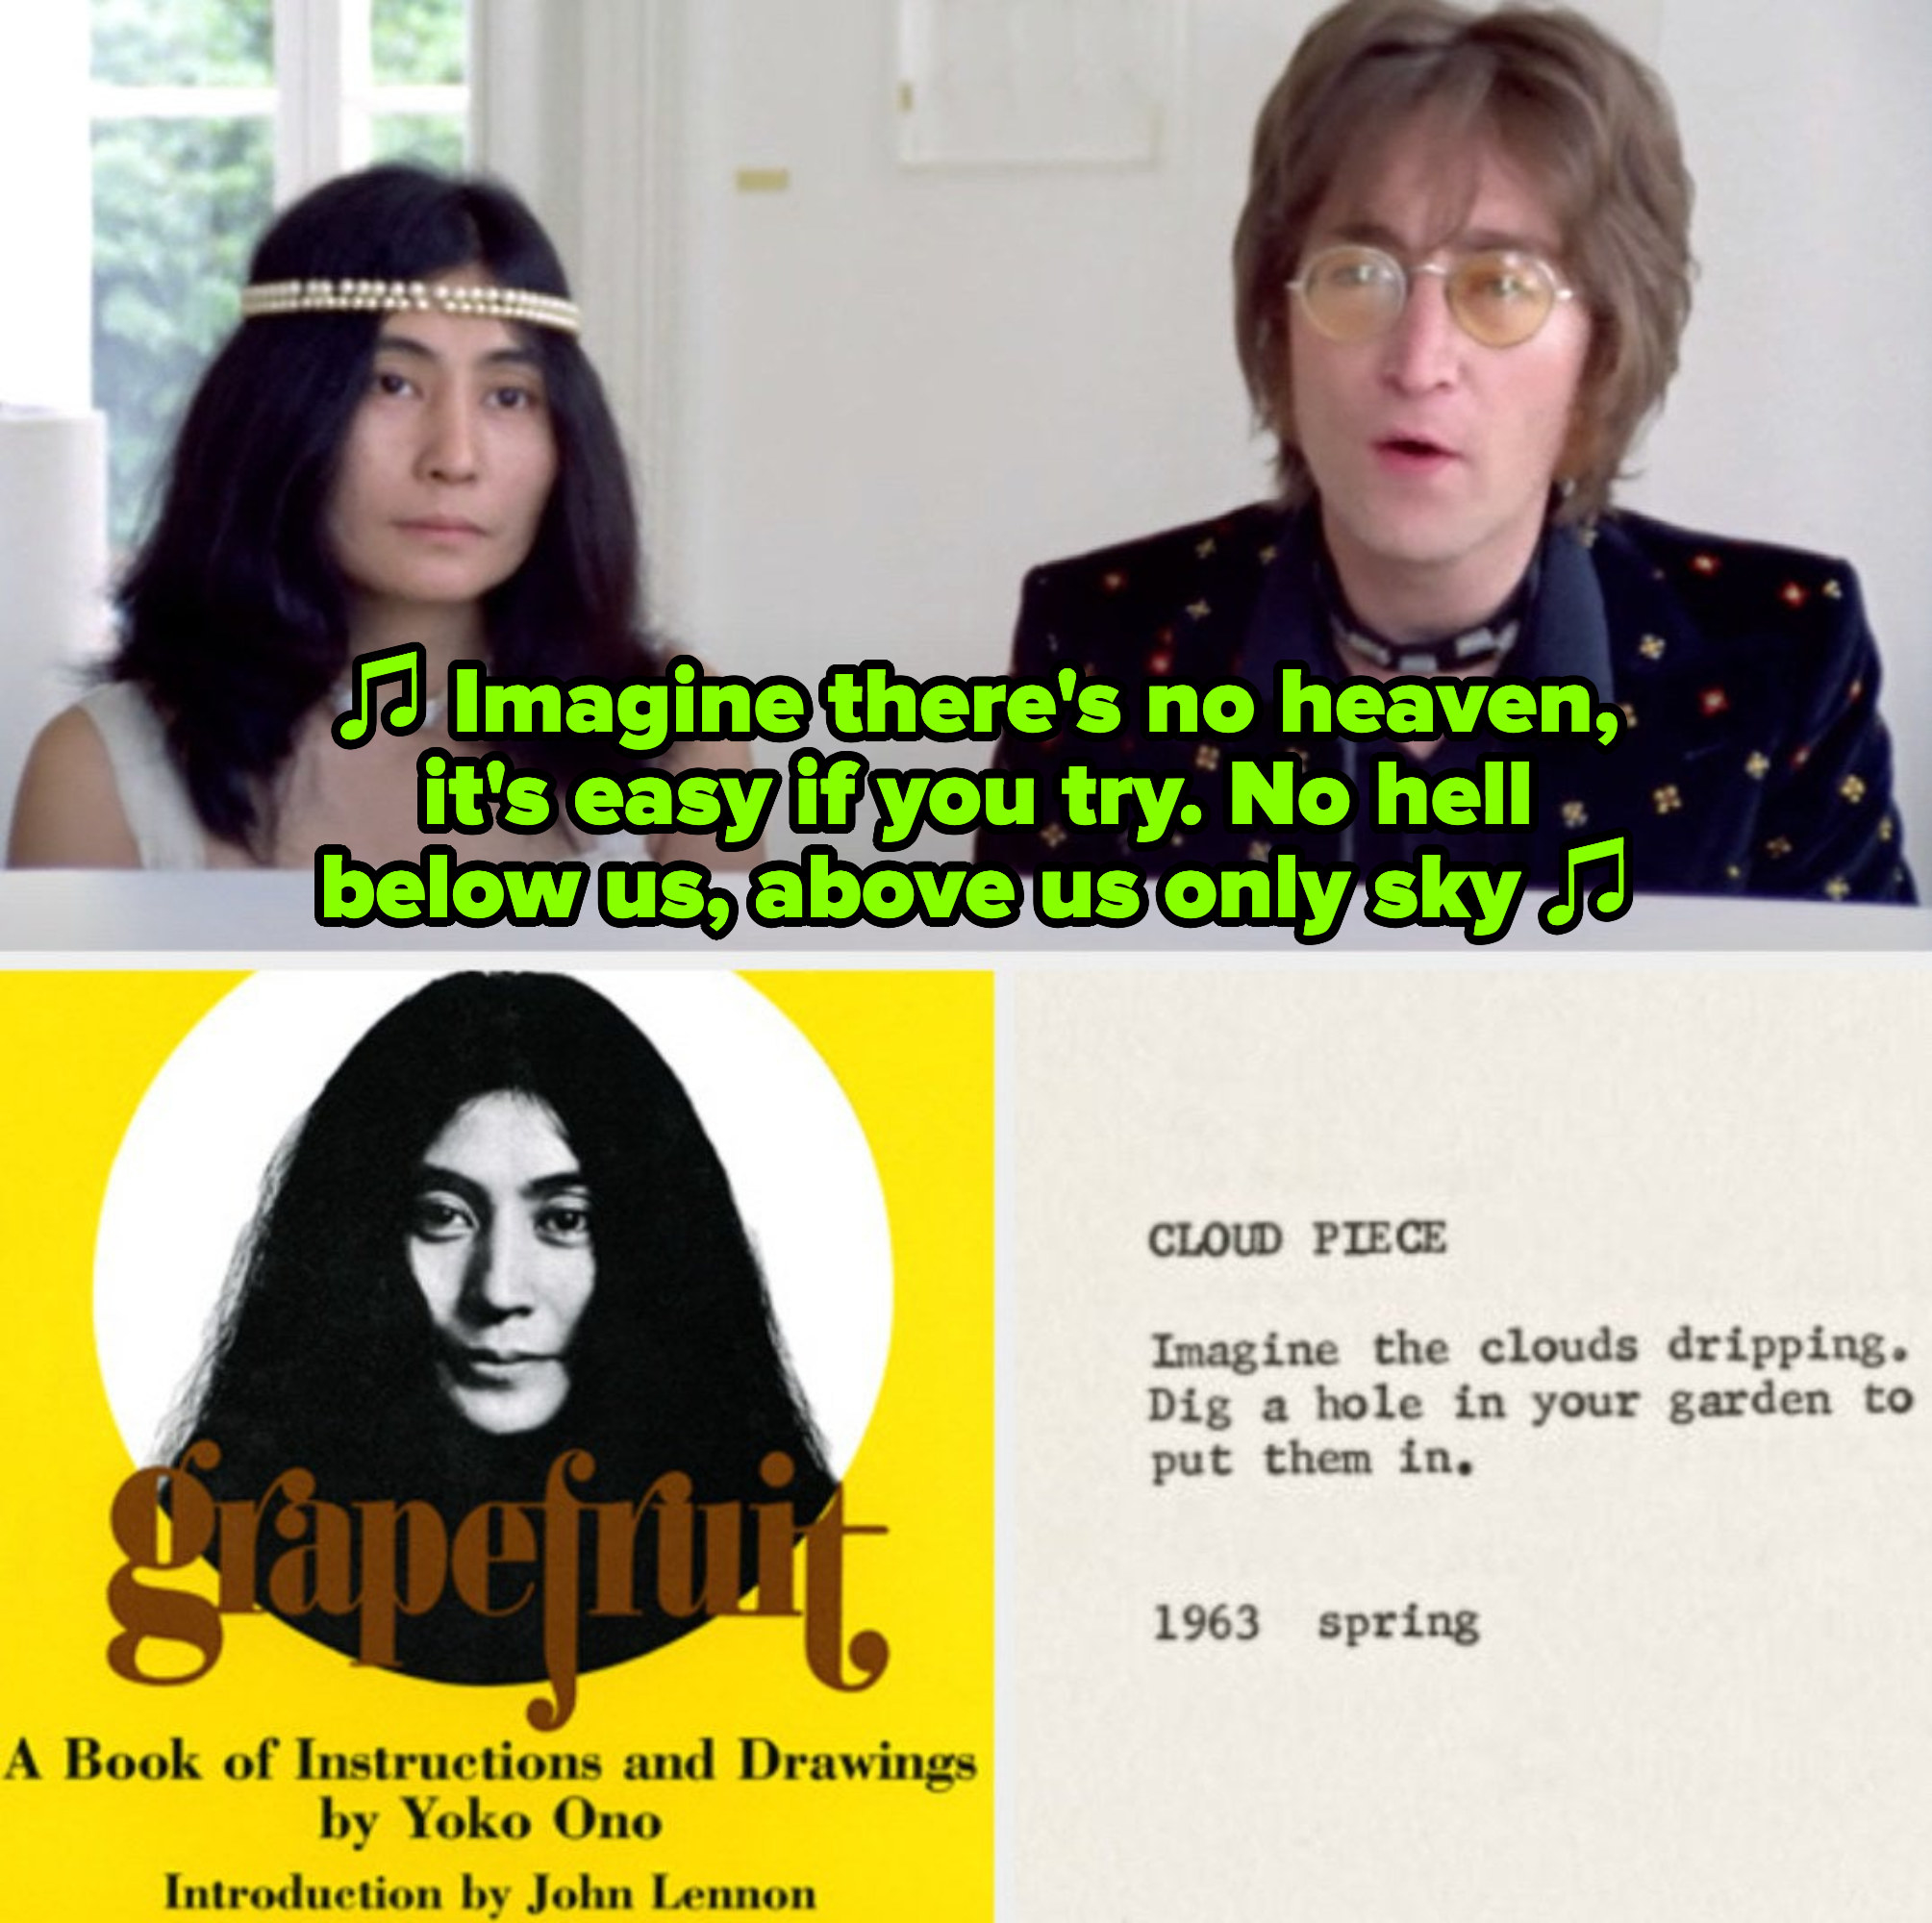 列侬和小野在《想象》;1971年的音乐录影带;noo '诗集《葡萄柚》封面;Ono'诗歌《云片》的节选;上面写着:“想象云朵滴落。”在你的花园里挖一个洞把它们放进去;